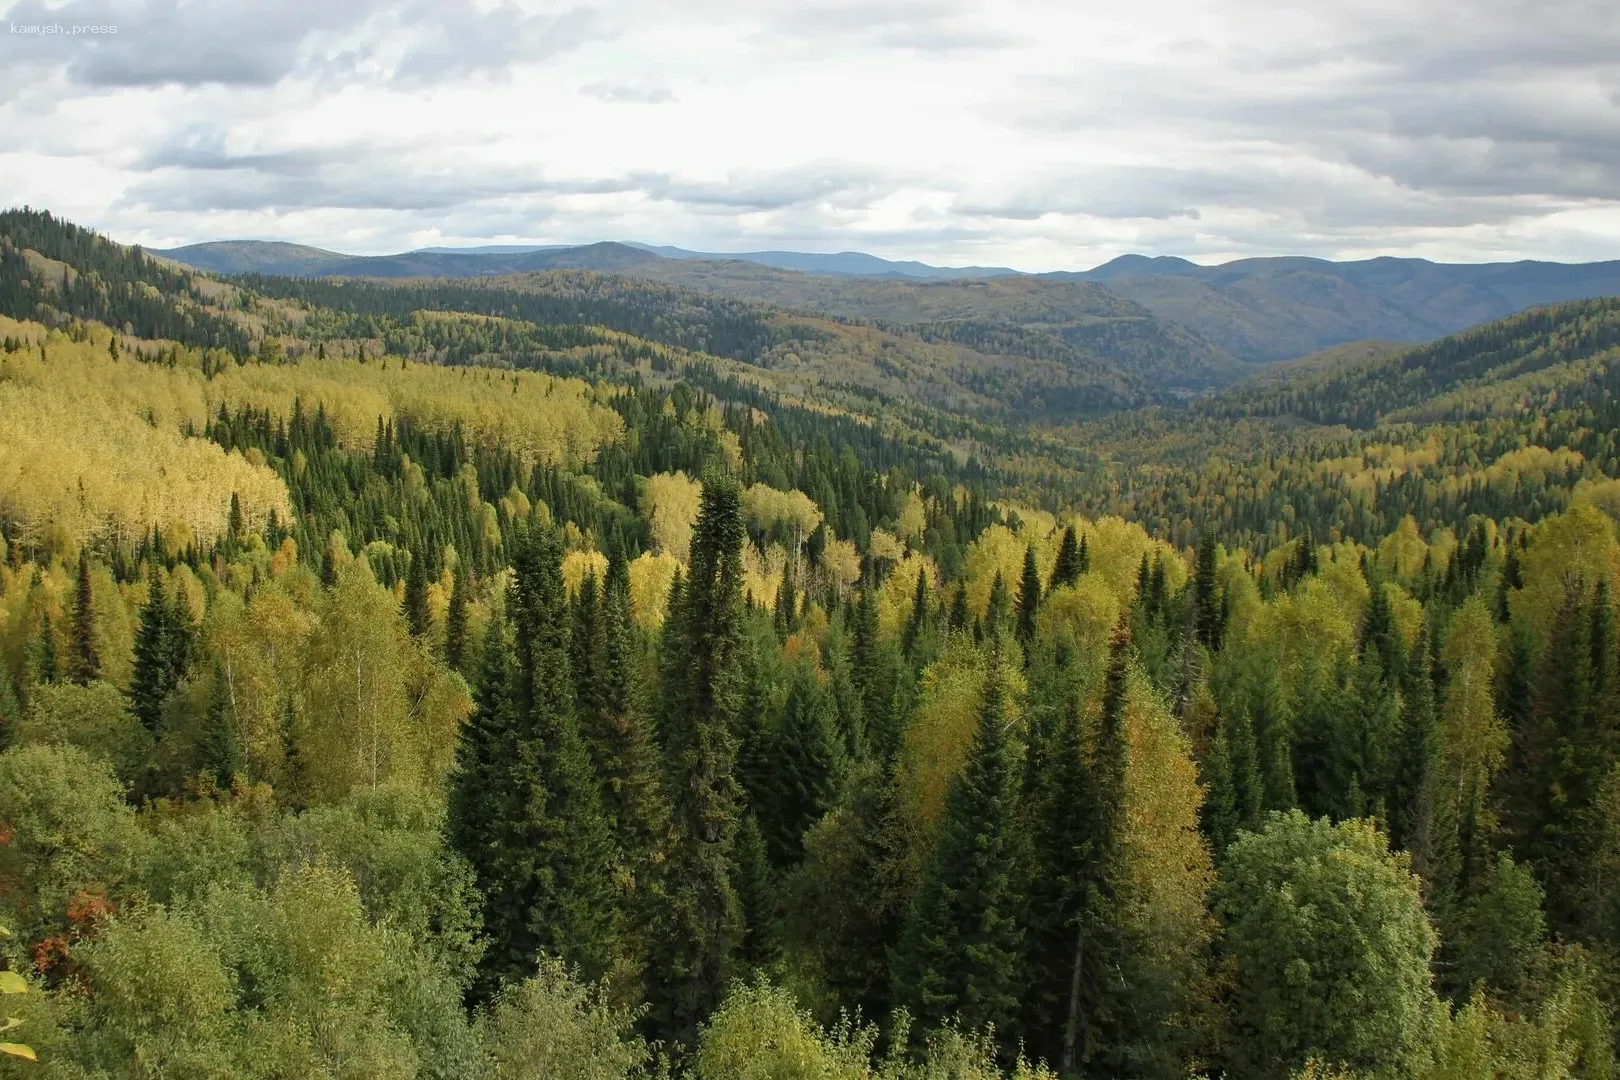 Ульяновская области заняла 12 место по ведению лесного хозяйства среди 89 субъектов РФ